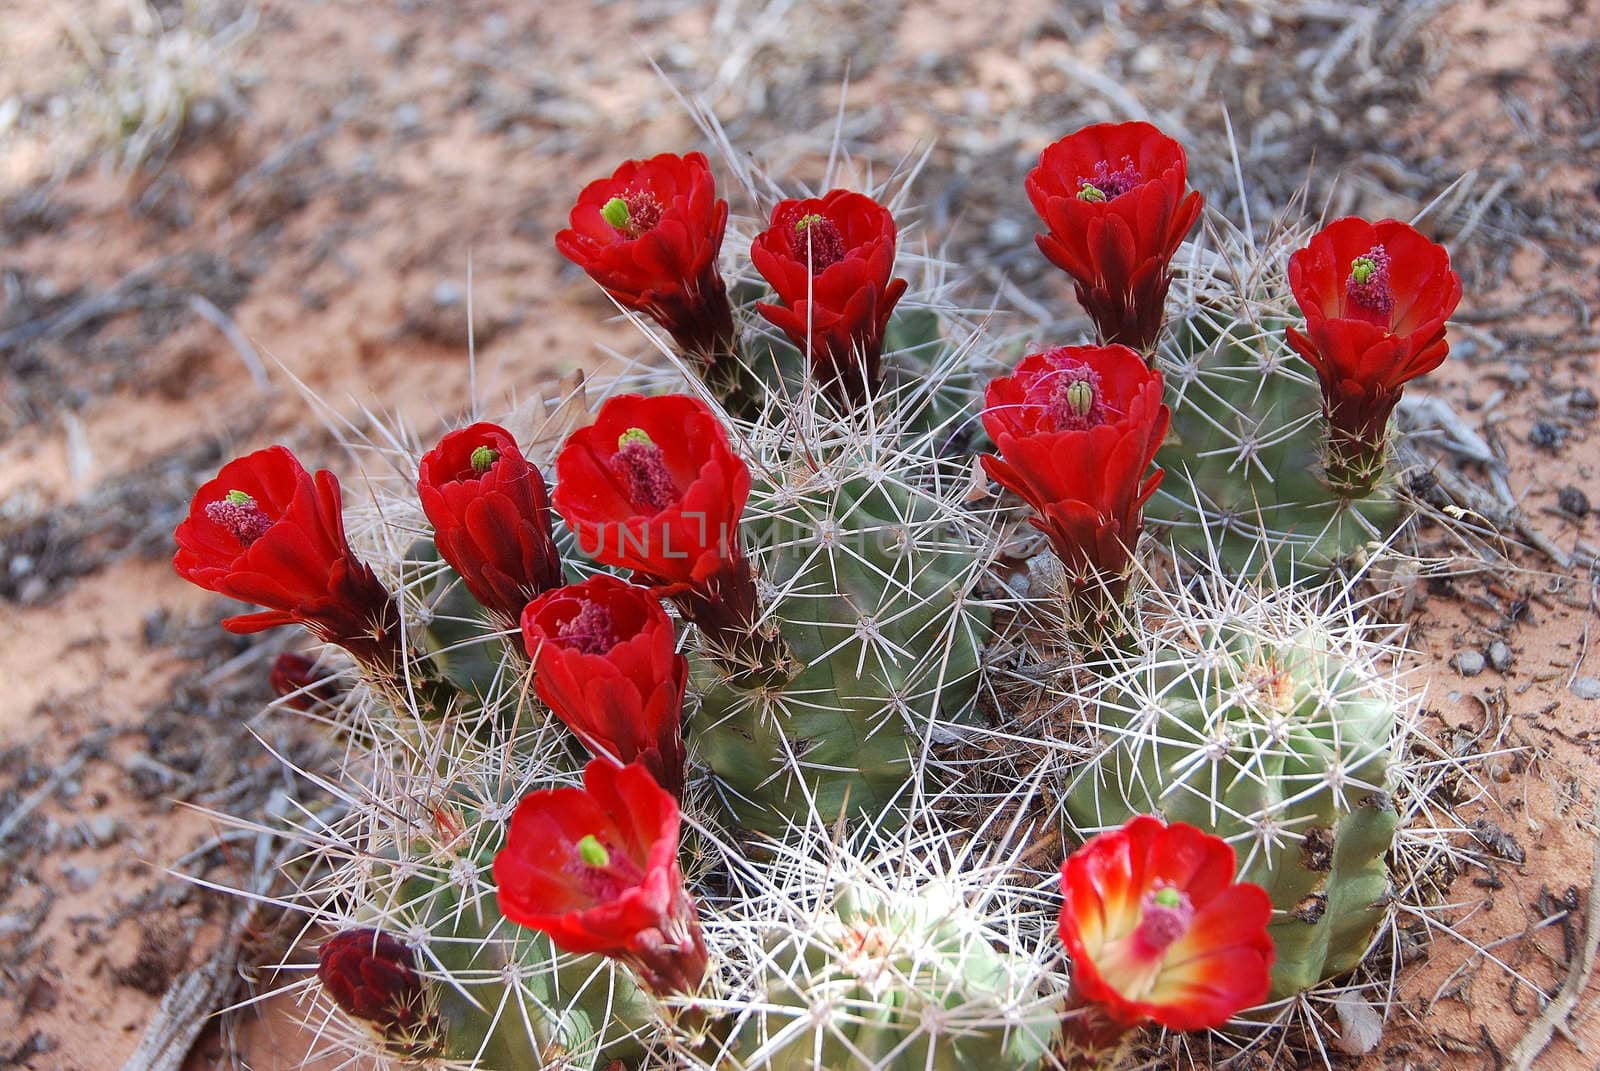 Cactus A by photocdn39